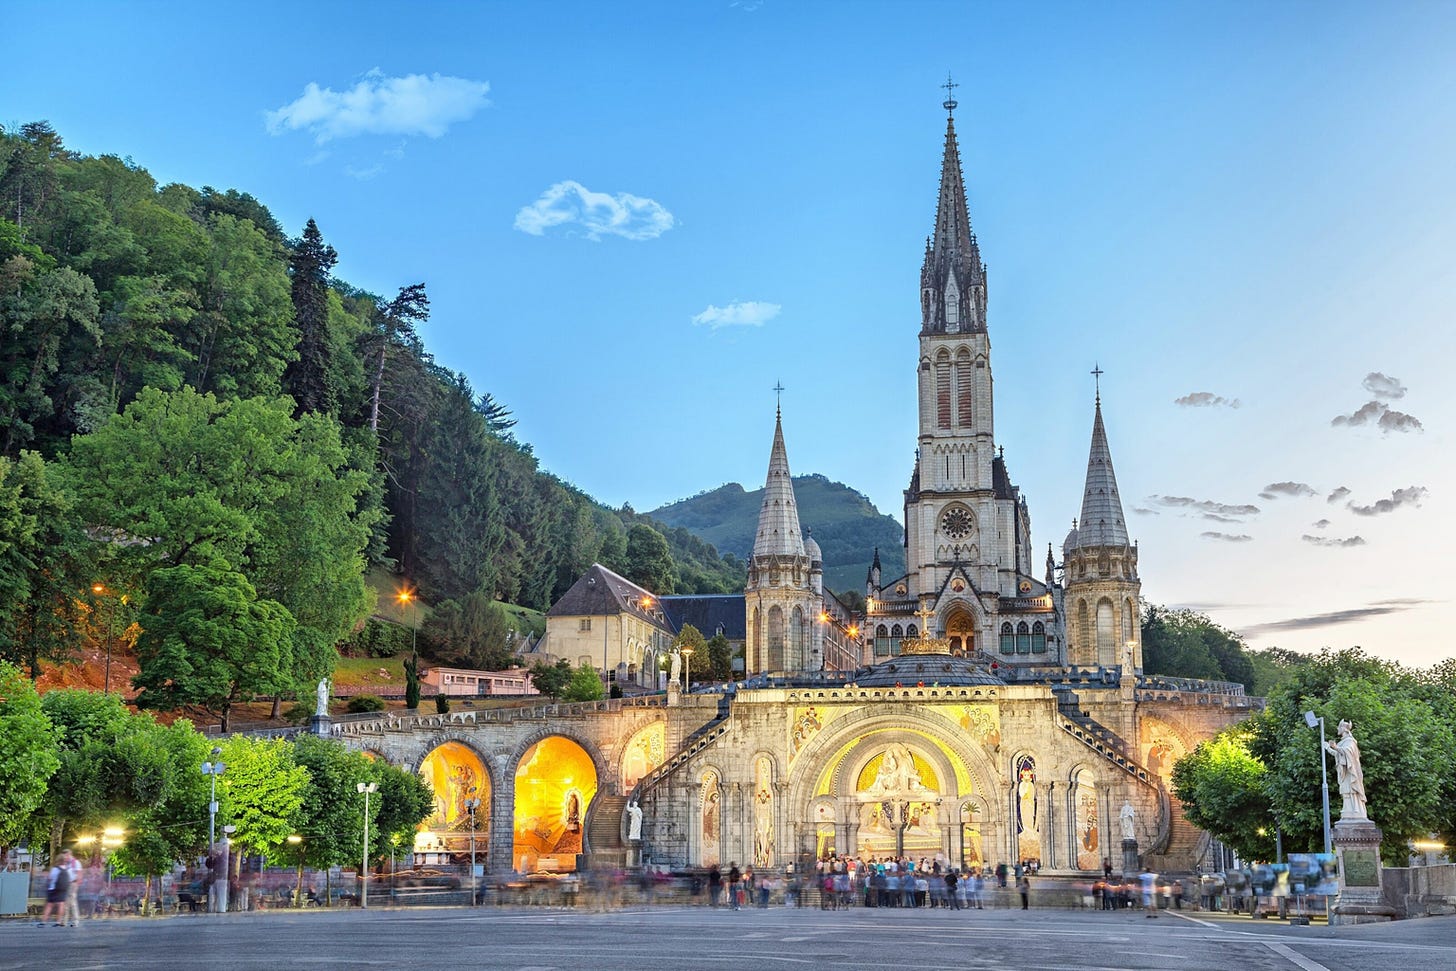 A bastion of the Christian faith, Lourdes, in southwest France.